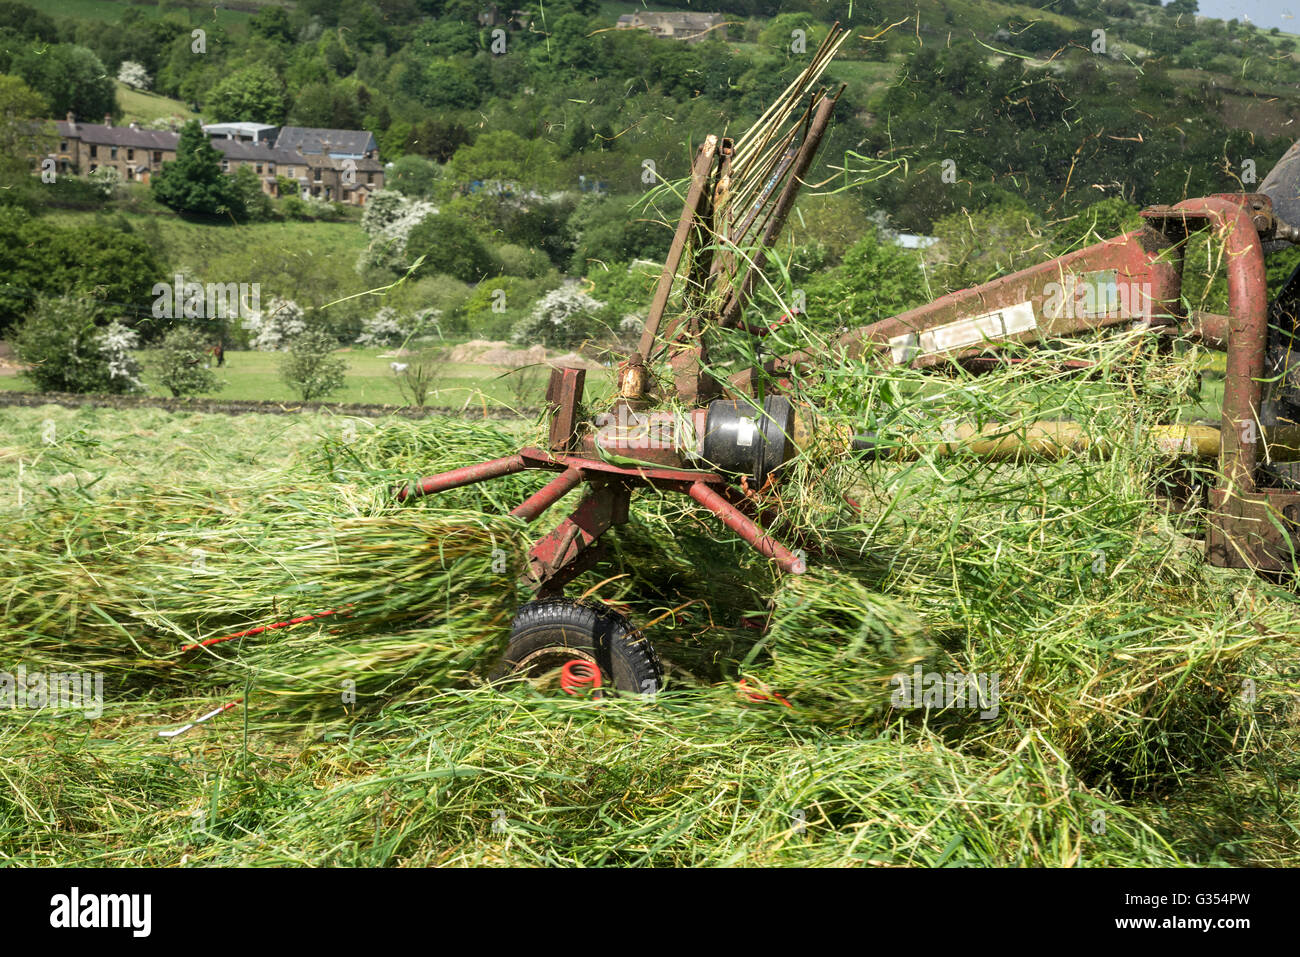 Macchinari agricoli erba di filatura in un prato di fieno nella campagna inglese. Foto Stock